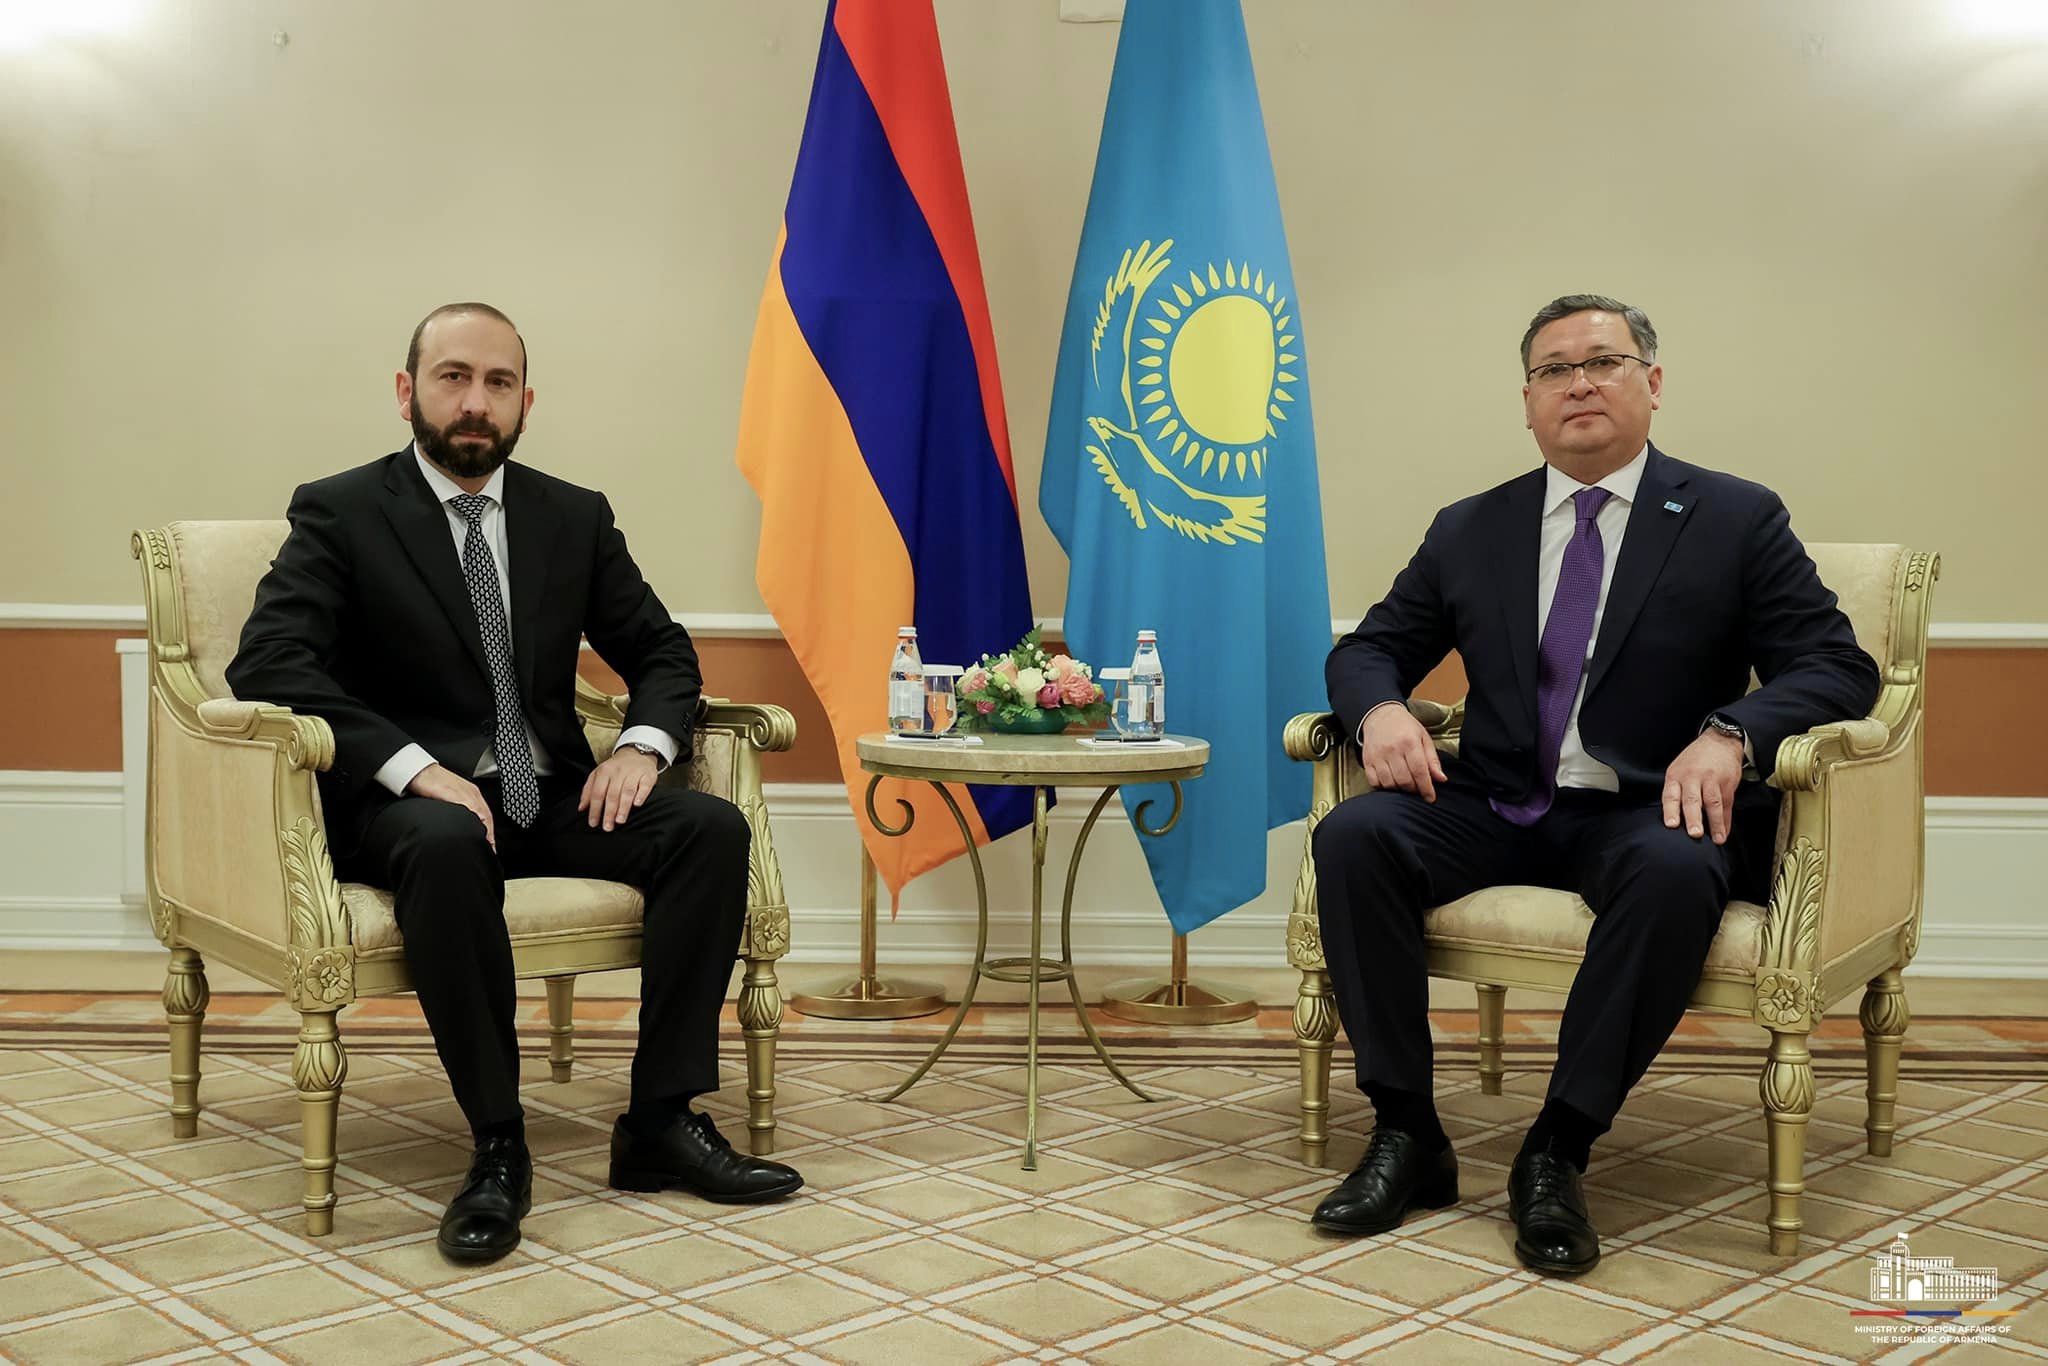 ՀՀ ԱԳ նախարար Արարատ Միրզոյանը հանդիպում է ունեցել Ղազախստանի փոխվարչապետի հետ